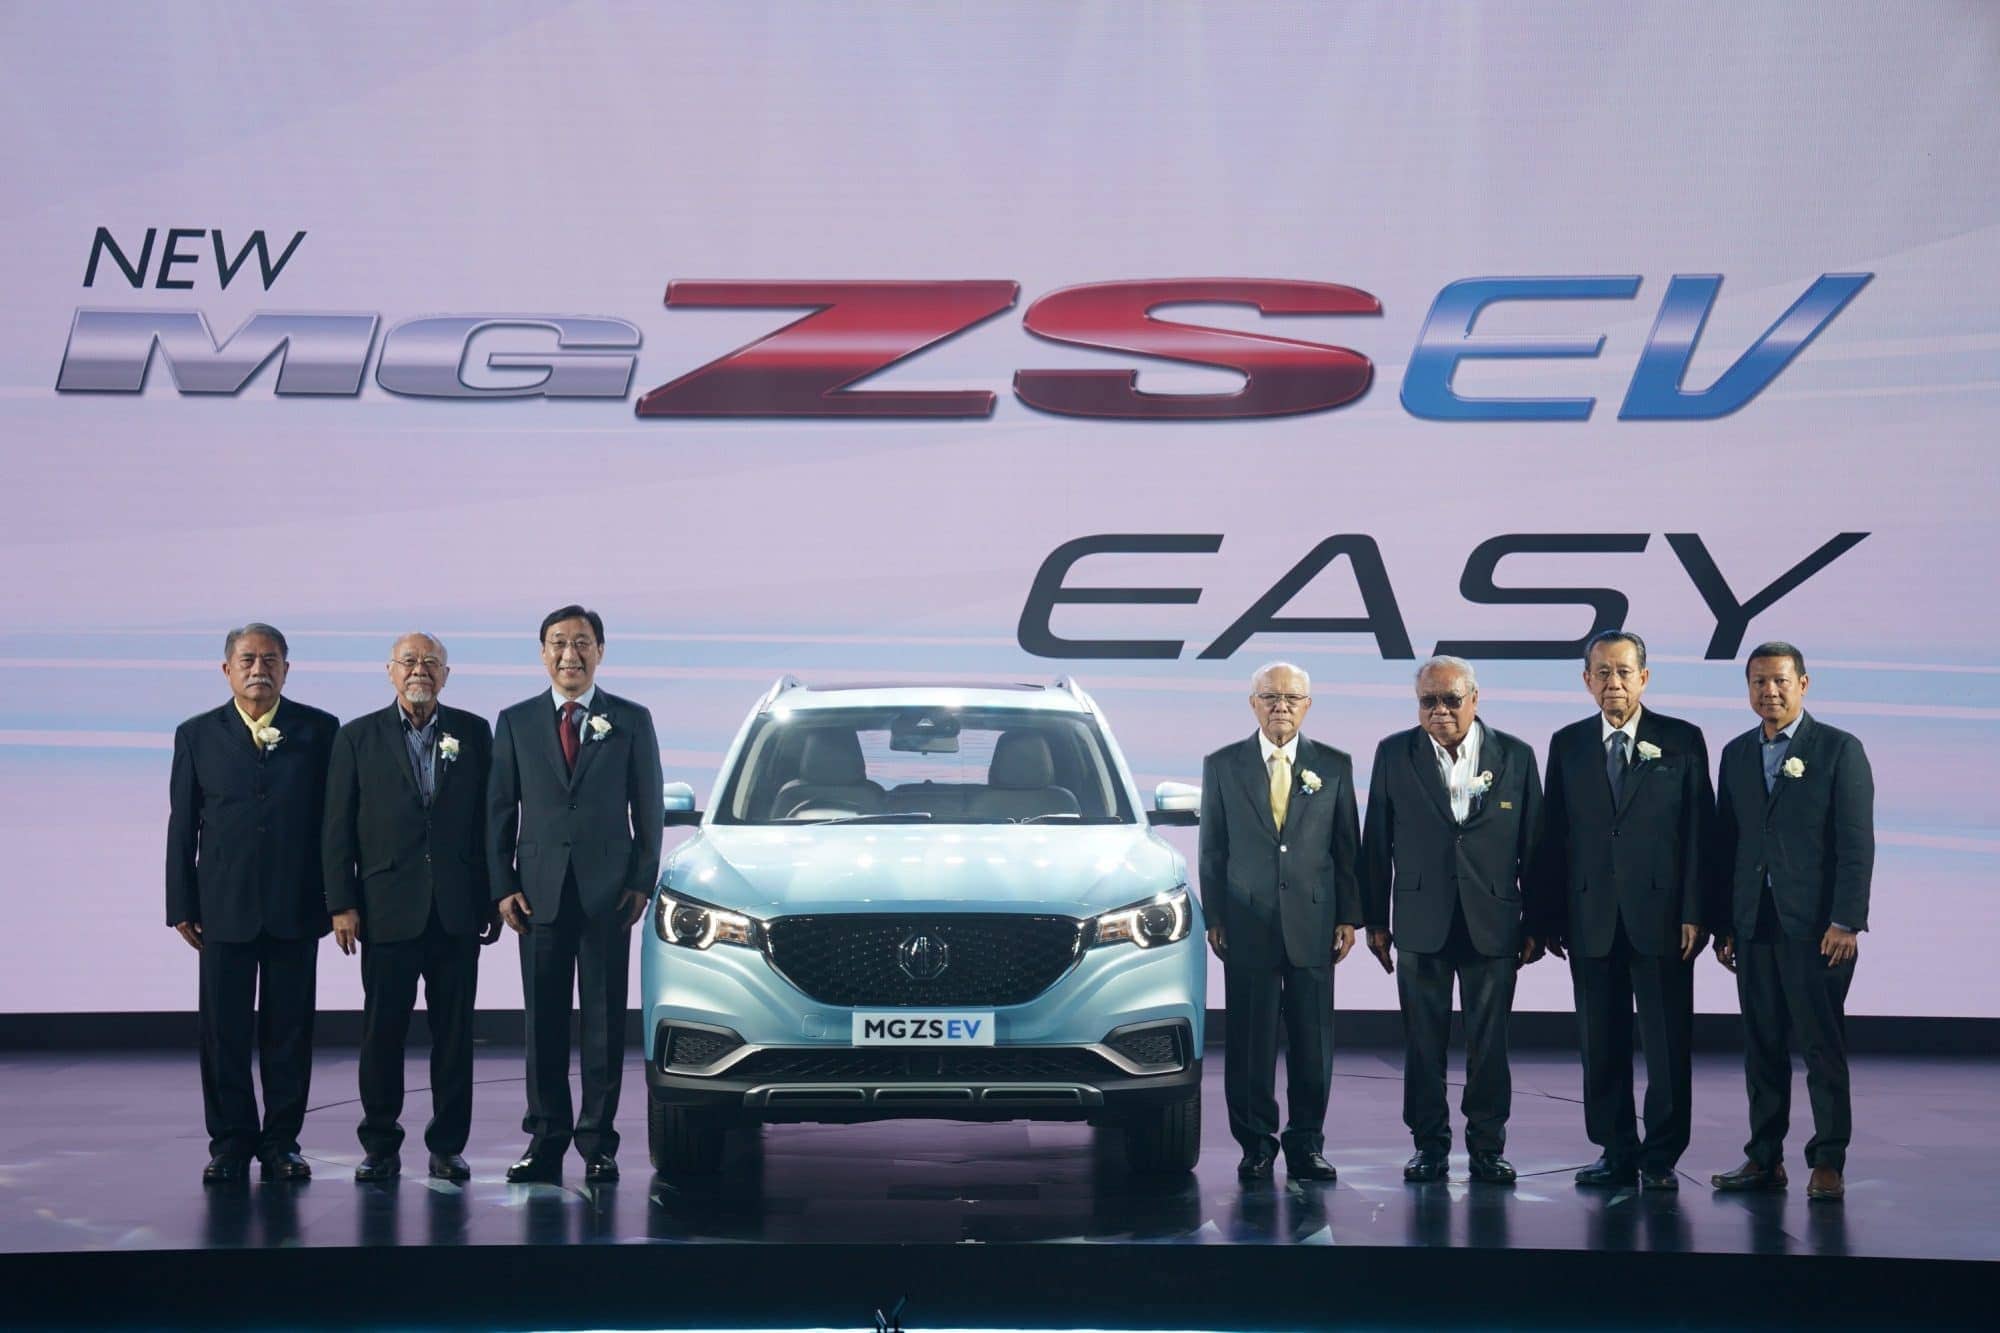 โลกสวยด้วยรถเรา MG ประเทศไทยเปิดตัว MG ZS EV รถยนต์ SUV พลังงานไฟฟ้าล้วน ราคา 1,190,000 บาท 3